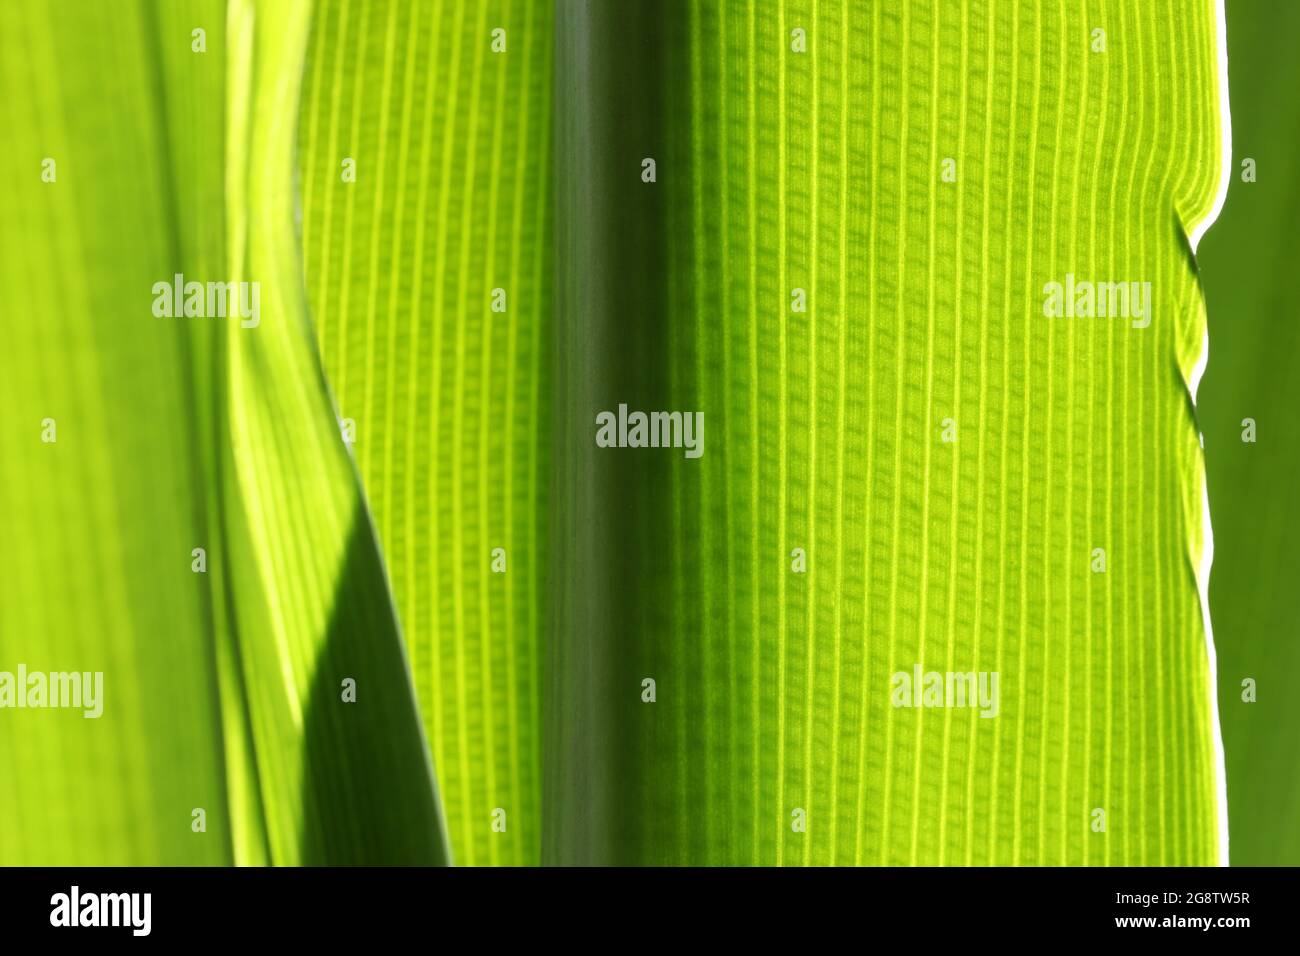 Une macro-image de la structure et du modèle cellulaires dans une feuille de plante jaune vert vif. Couleur rétro-éclairée Banque D'Images